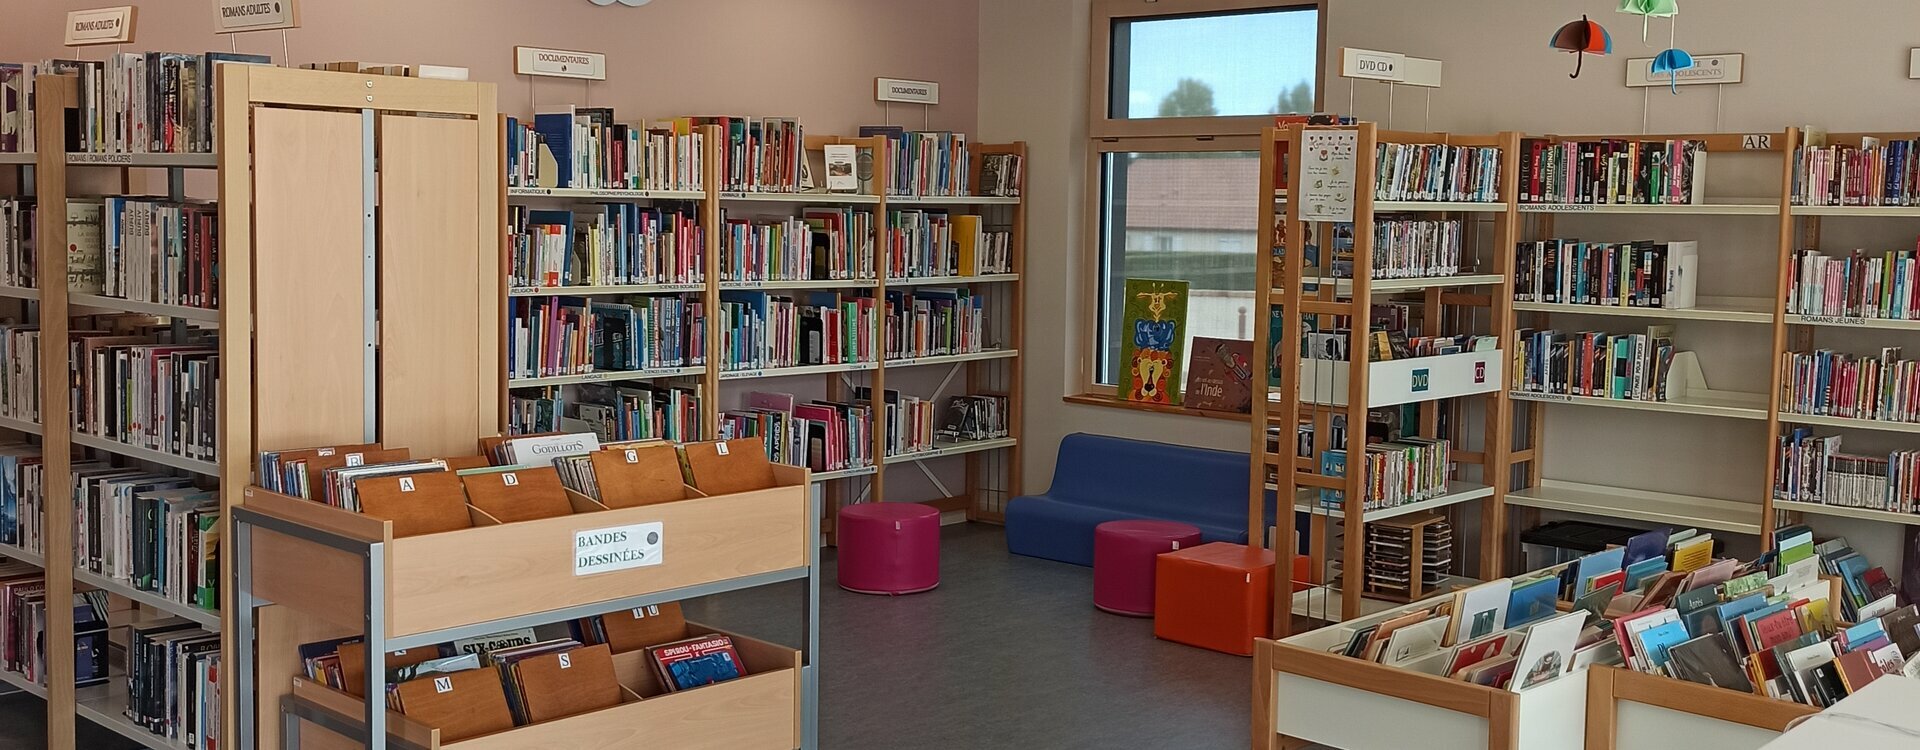 La bibliothèque municipale de Civray